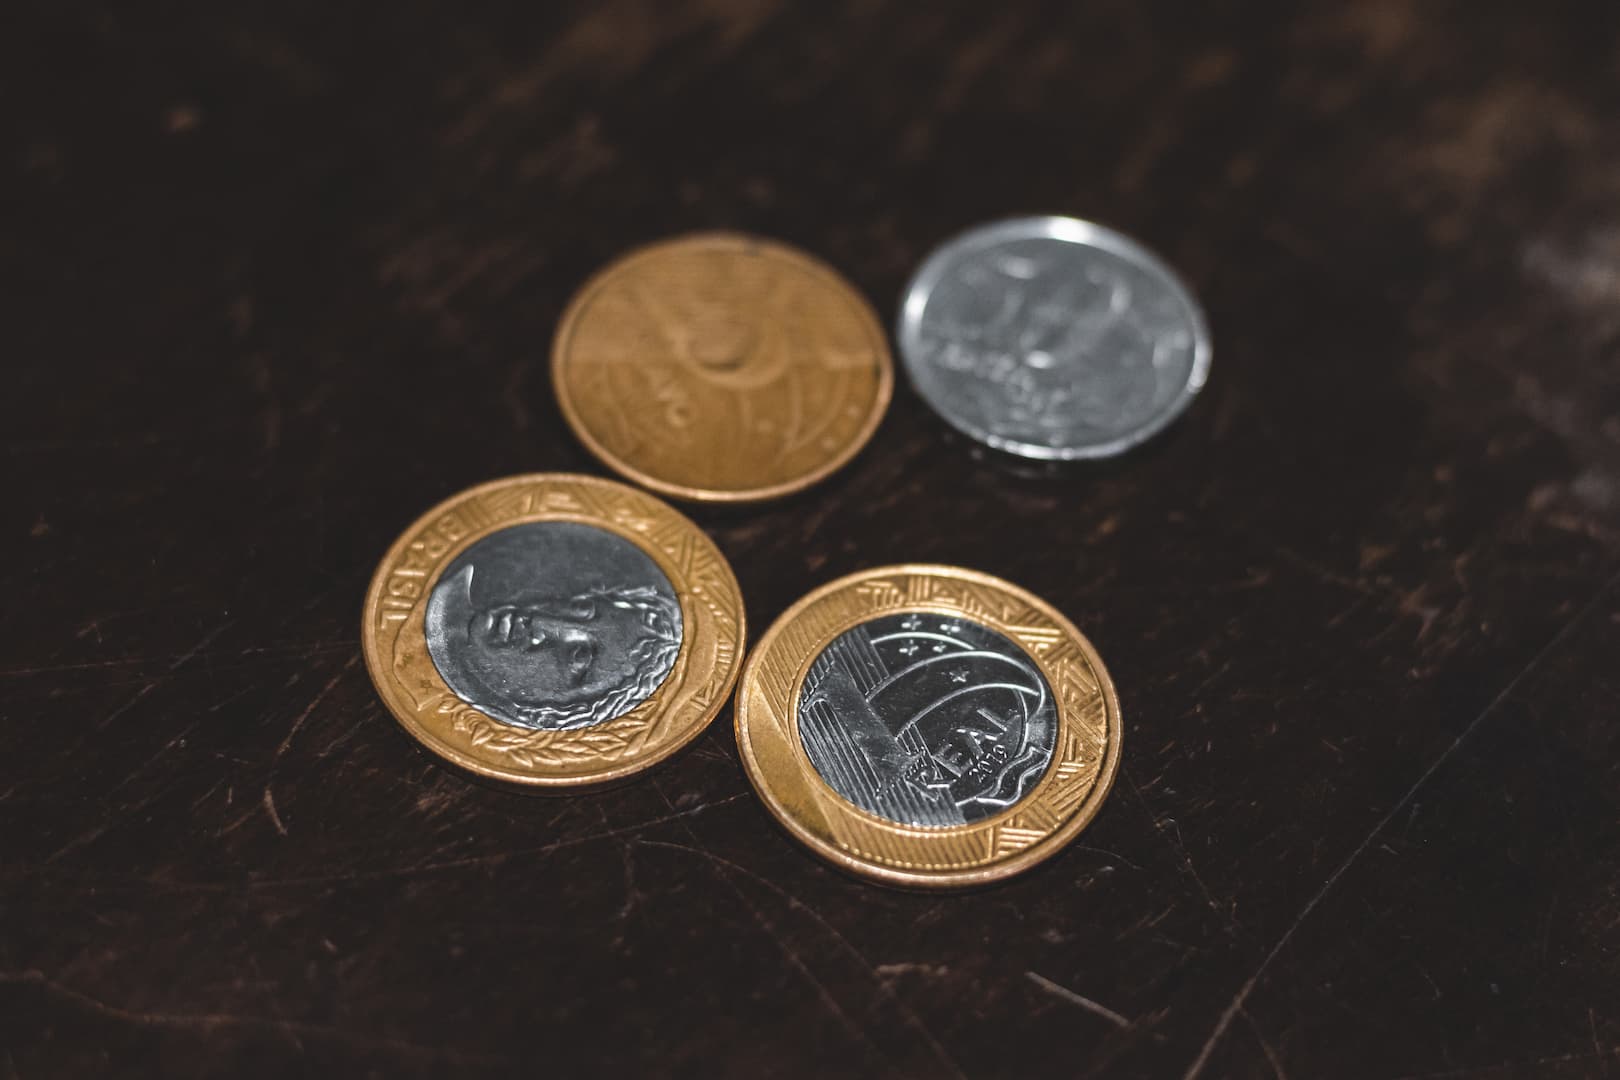 A imagem mostra quatro moedas em cima de uma superfície de madeira escura. Há duas moedas de um real, uma de cinquenta centavos e uma de 25 centavos.